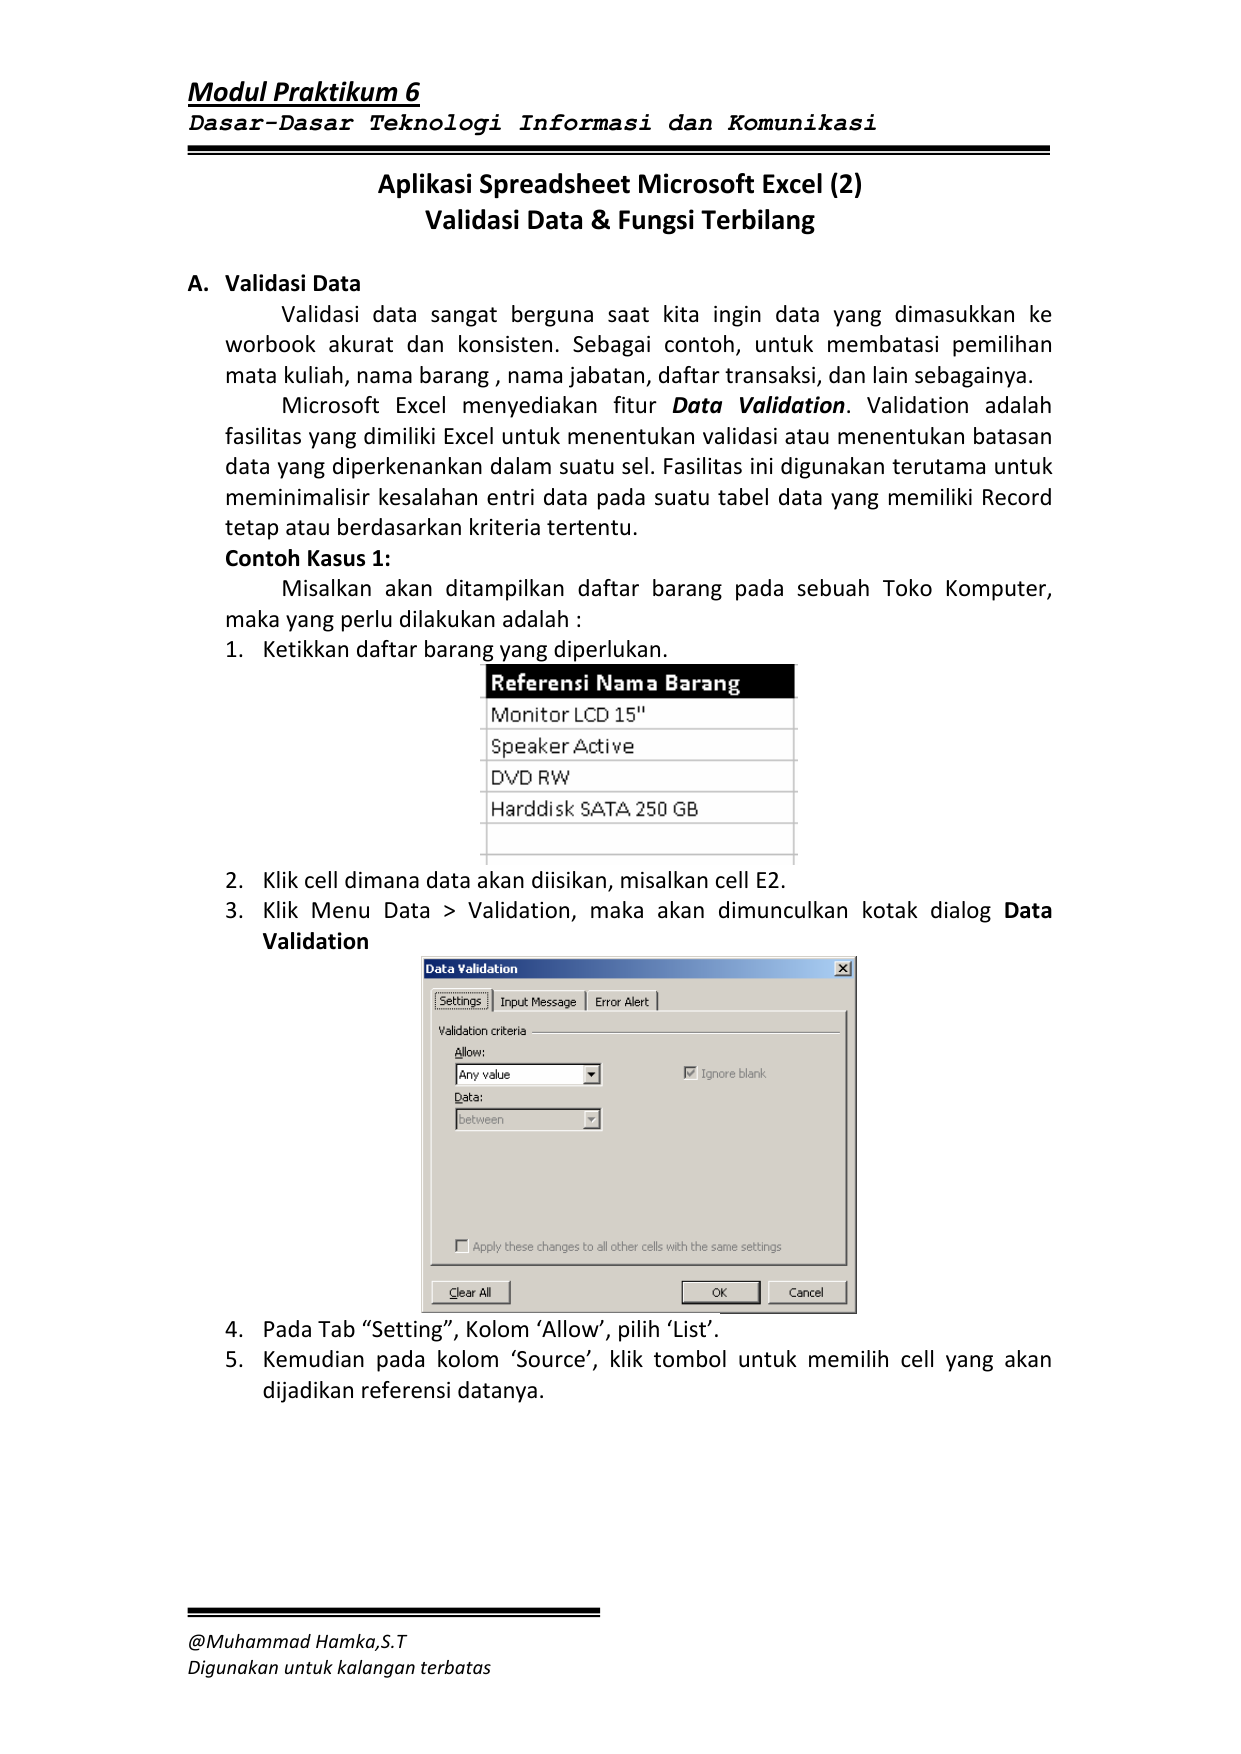 Modul Praktikum 6 Aplikasi Spreadsheet Microsoft Excel 2